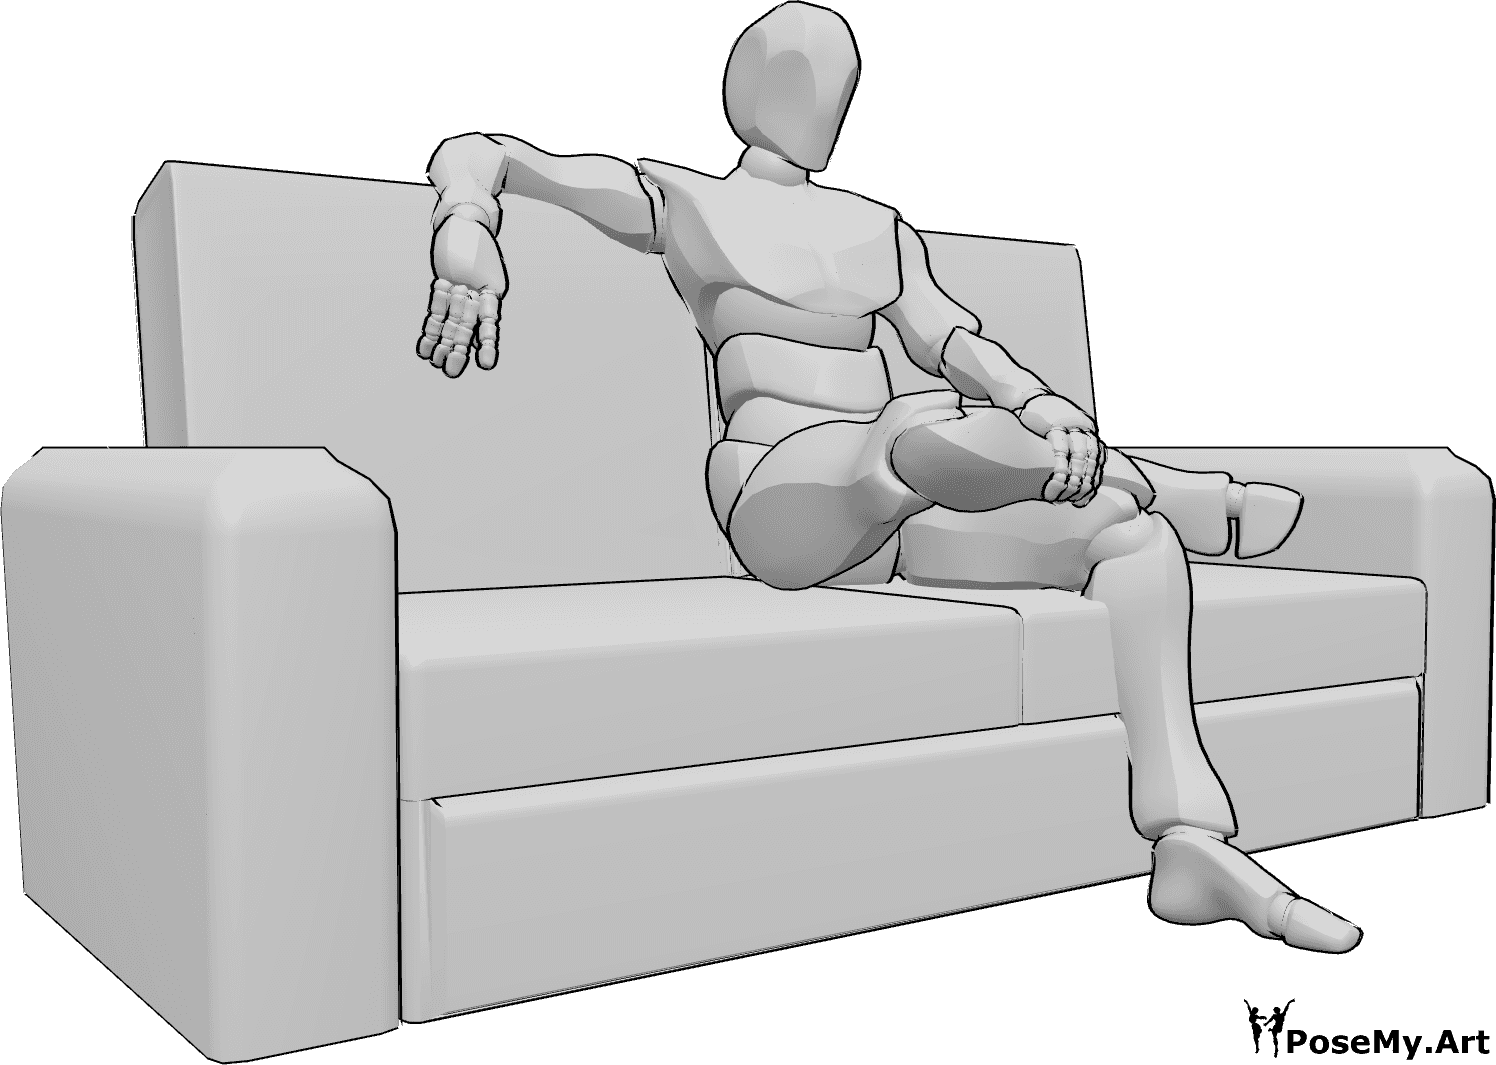 Referencia de poses- Postura sentada con las piernas cruzadas - Varón sentado en el sofá con las piernas cruzadas, sujetándose la pierna con la mano izquierda y apoyando la derecha encima del sofá.